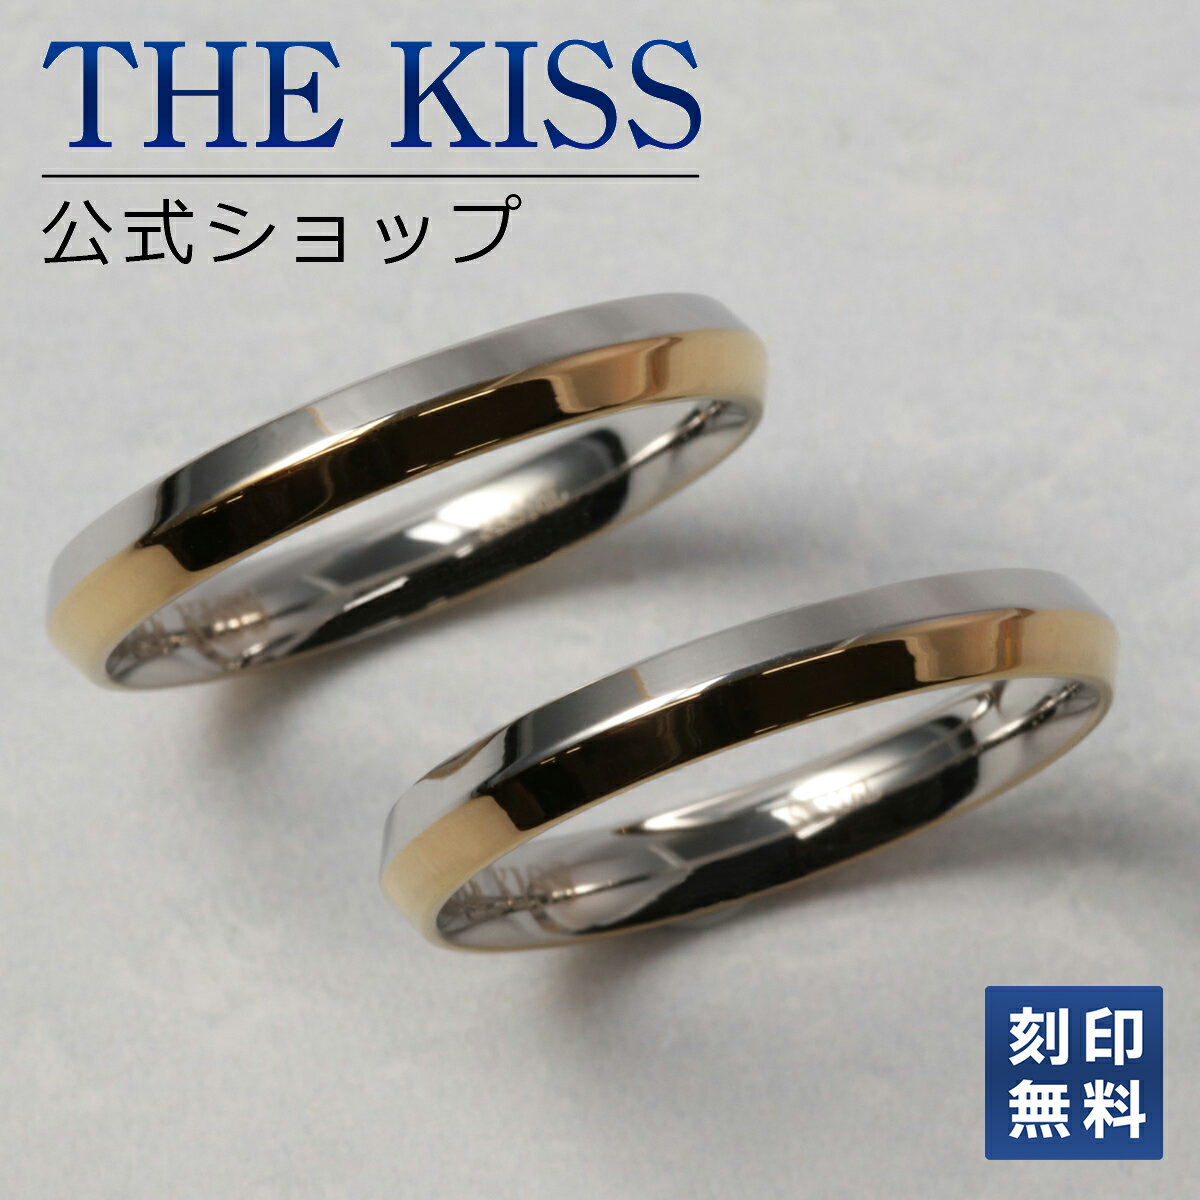 THE KISS 公式ショップ シルバー ペアリング ペアアクセサリー カップル 人気 ジュエリーブランド THEKISS 指輪 プレゼント TR1026YE-P セット シンプル 男性 女性 2個セット 母の日 名前入り